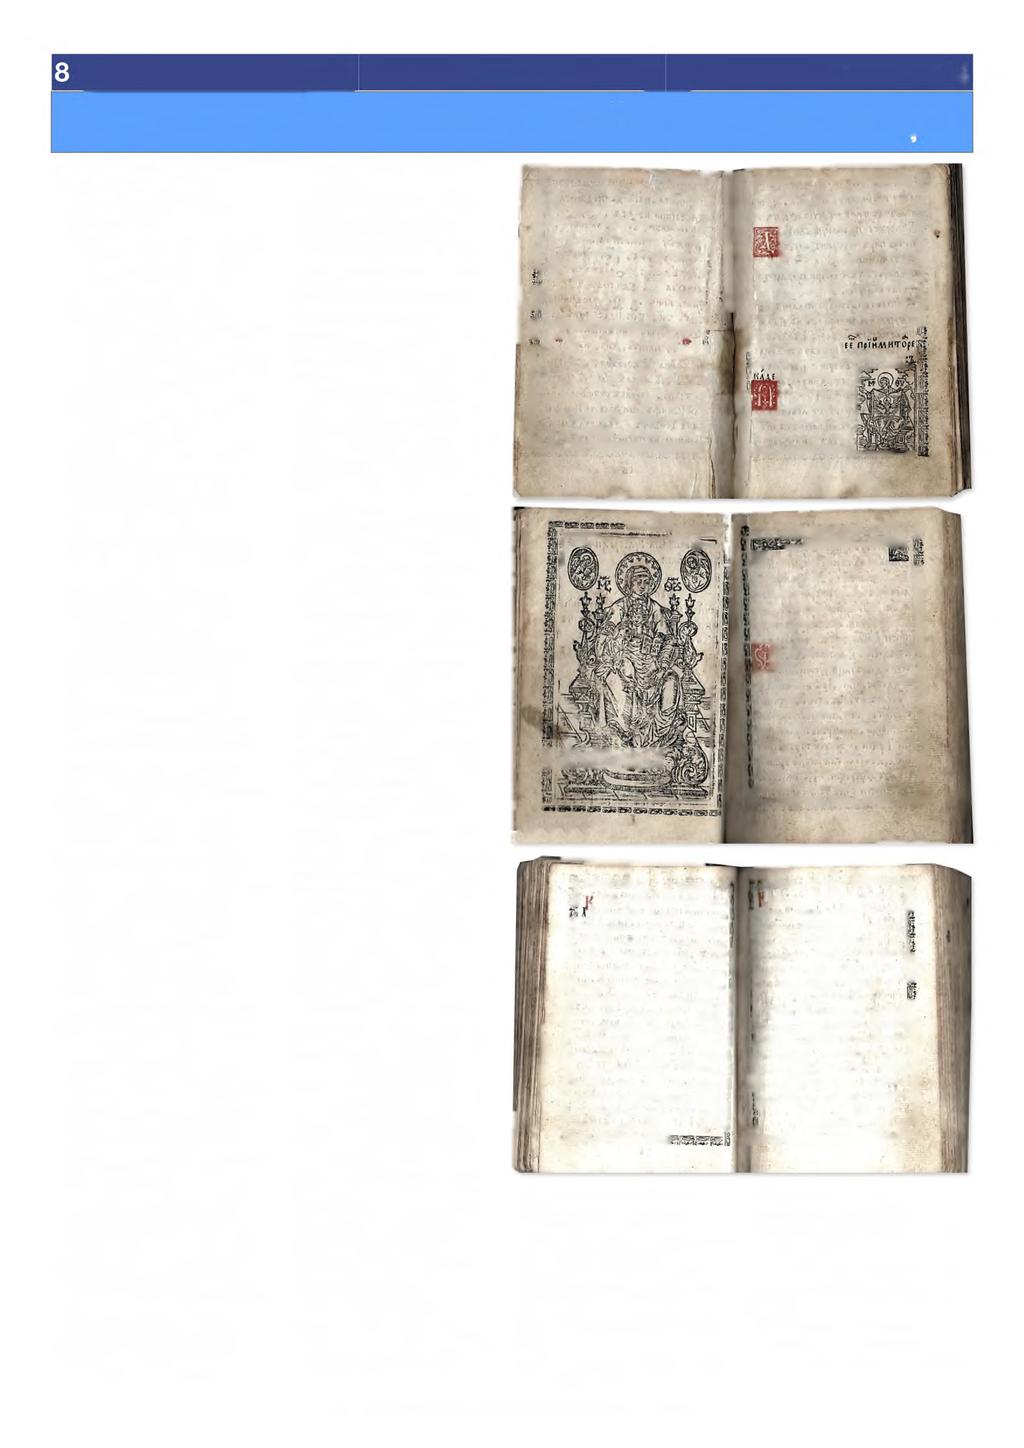 UN ACATIST NECUNOSCUT TIPĂRIT LA BUCUREŞTI Acatist [Bucureşti, 1679-1683] în colecţiile de carte veche românească ale Bibliotecii Academiei Române, sub cota 81 A, este înregistrată o frumoasă